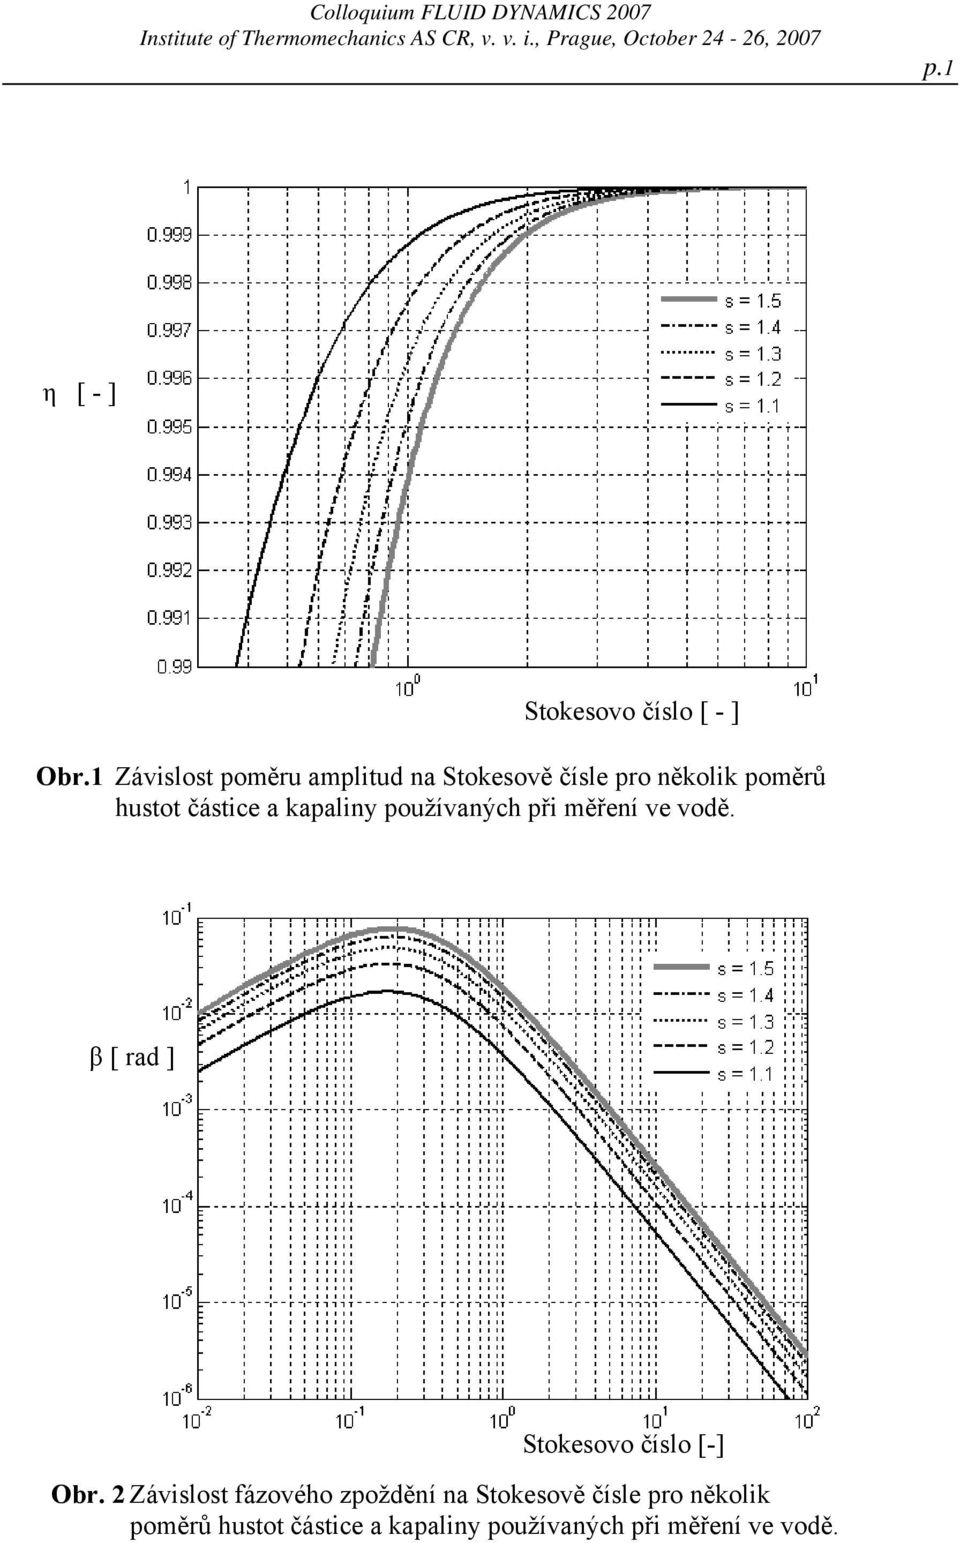 1 Závislost poměru amplitud na Stokesově čísle pro několik poměrů hustot částice a kapaliny používaných